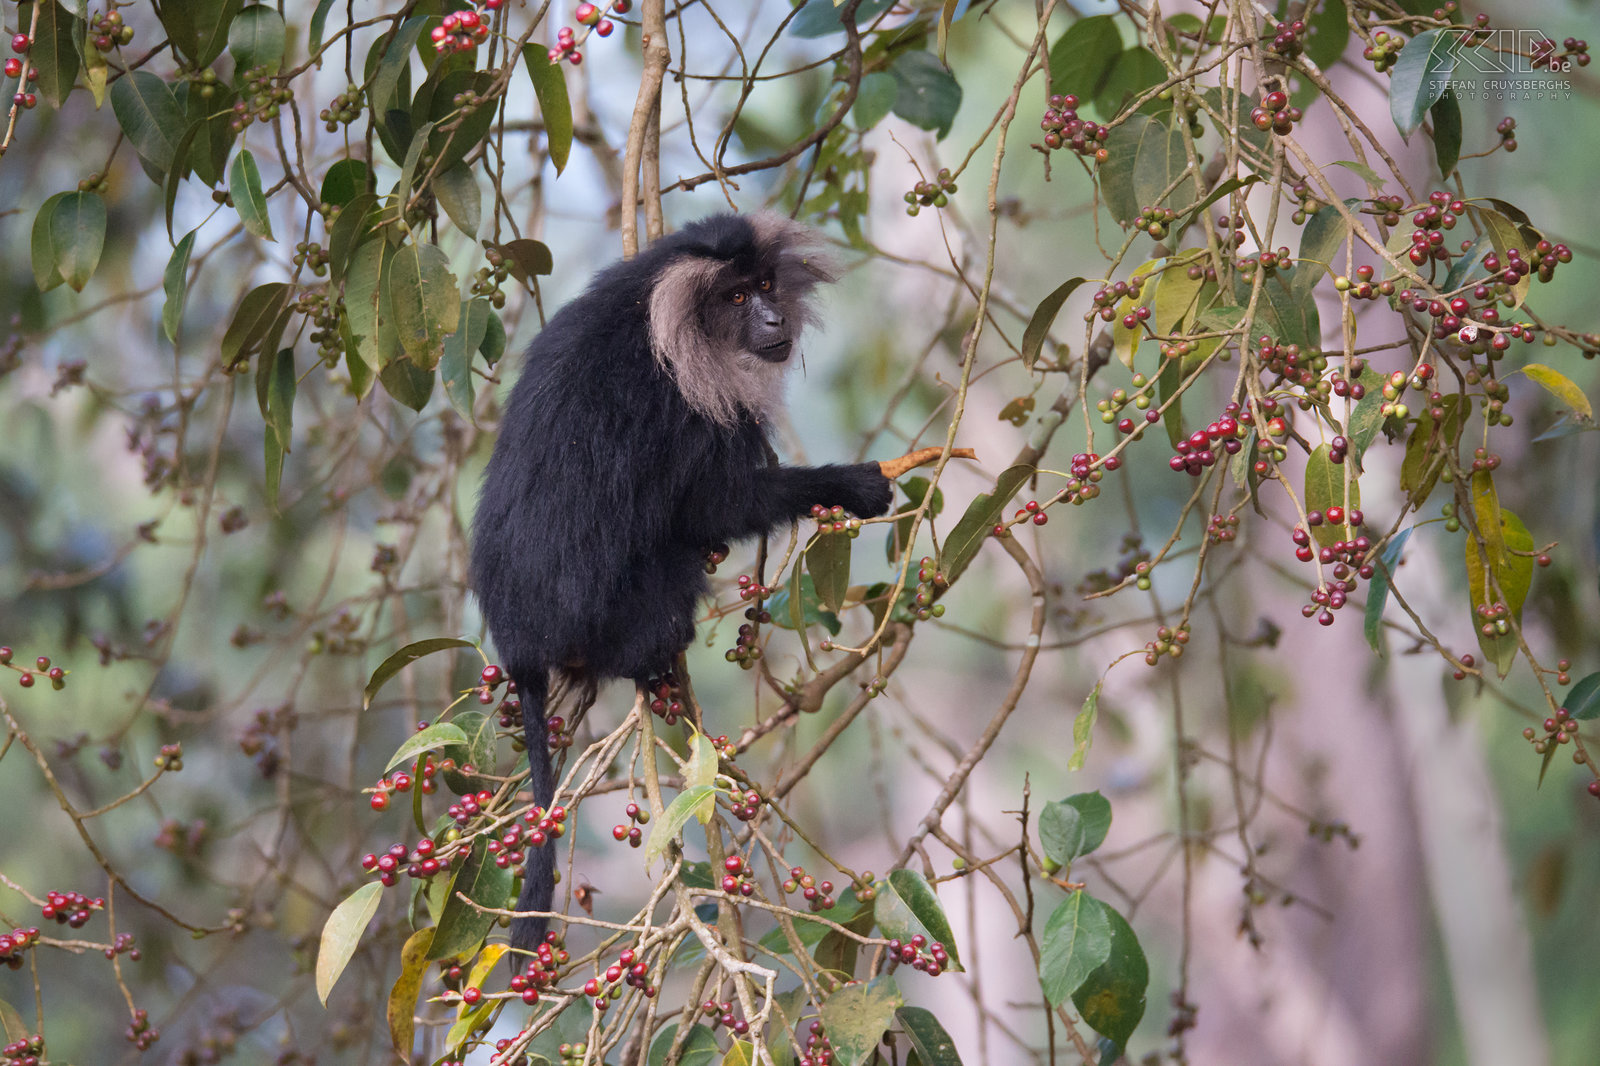 Valparai - Wanderoe De wanderoe, baardaap of leeuwenstaartmakaak (Lion-tailed macaque, Macaca silenus) is een bedreigde apensoort en endemisch in het West Ghats gebergte in het zuiden van India. Het is een prachtige en weinig schuwe apensoort die je nog kan terugvinden in de bossen van de theeplantages in Valparai. Stefan Cruysberghs